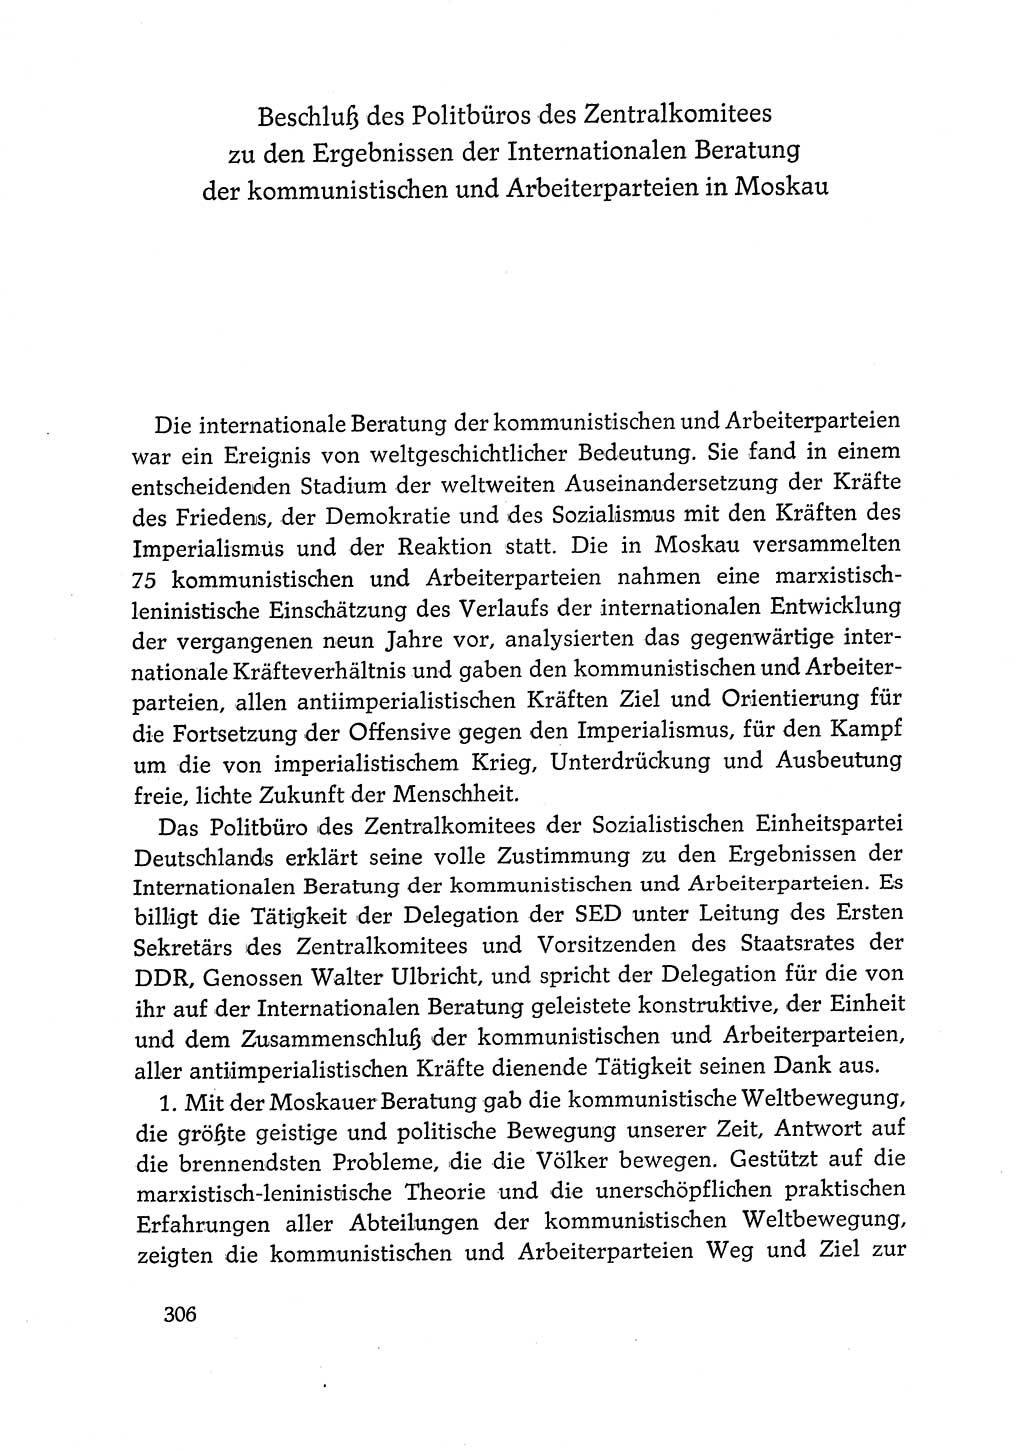 Dokumente der Sozialistischen Einheitspartei Deutschlands (SED) [Deutsche Demokratische Republik (DDR)] 1968-1969, Seite 306 (Dok. SED DDR 1968-1969, S. 306)